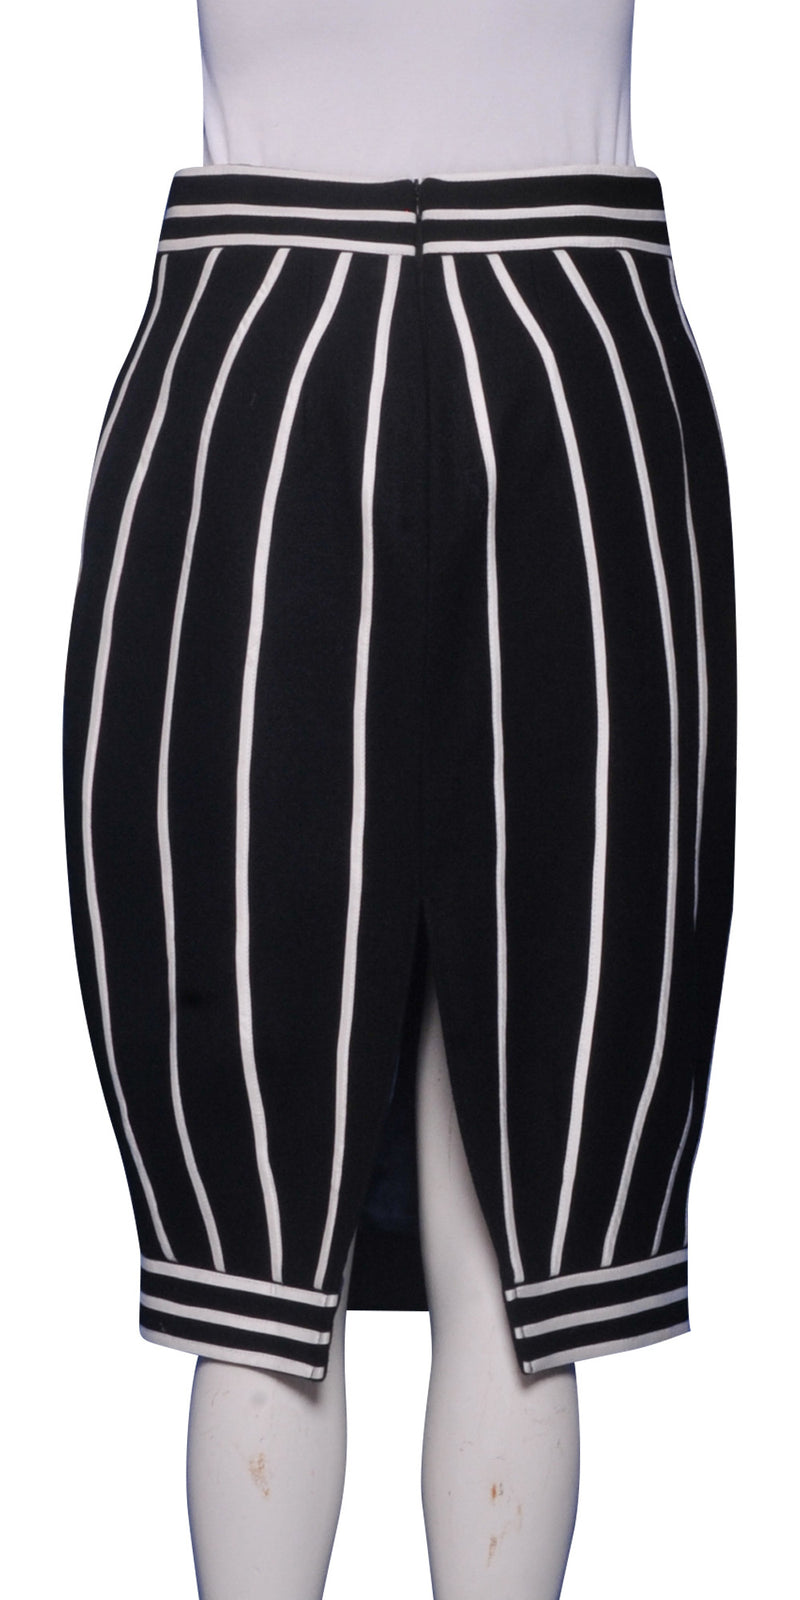 WS21 - Elliptic skirt